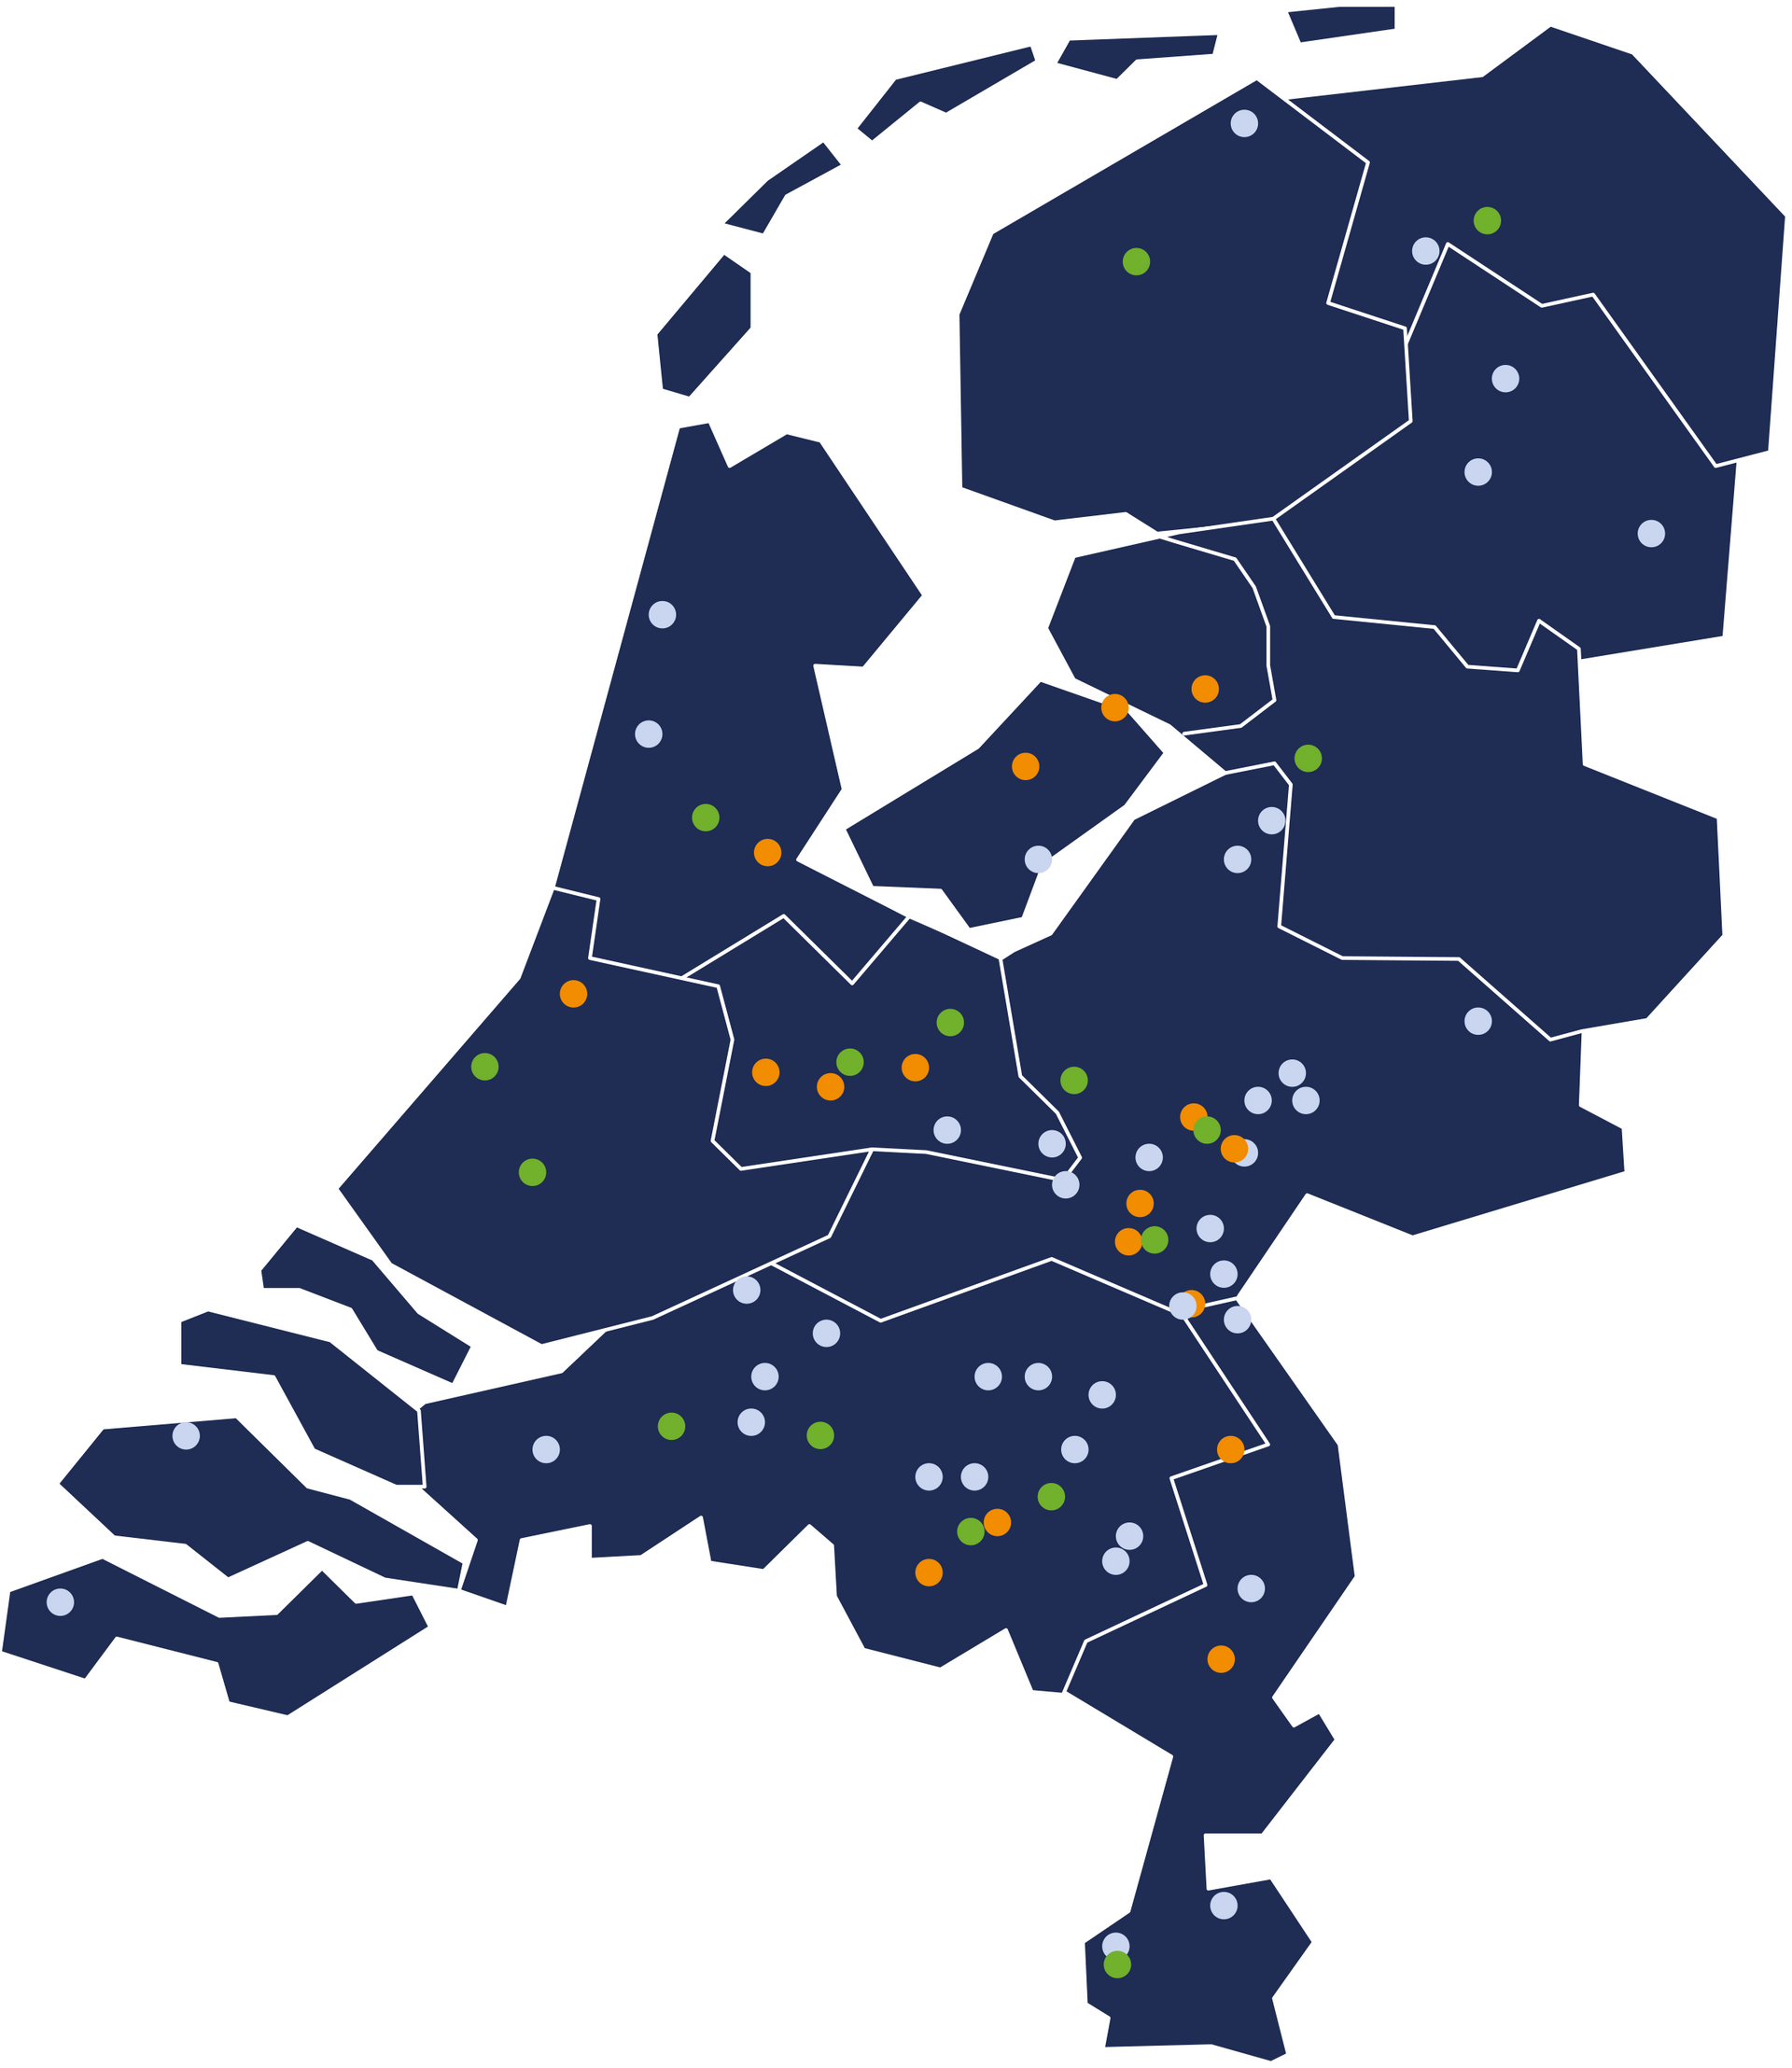 Kaart van Nederland met locaties buitenreclame en bioscoopreclame